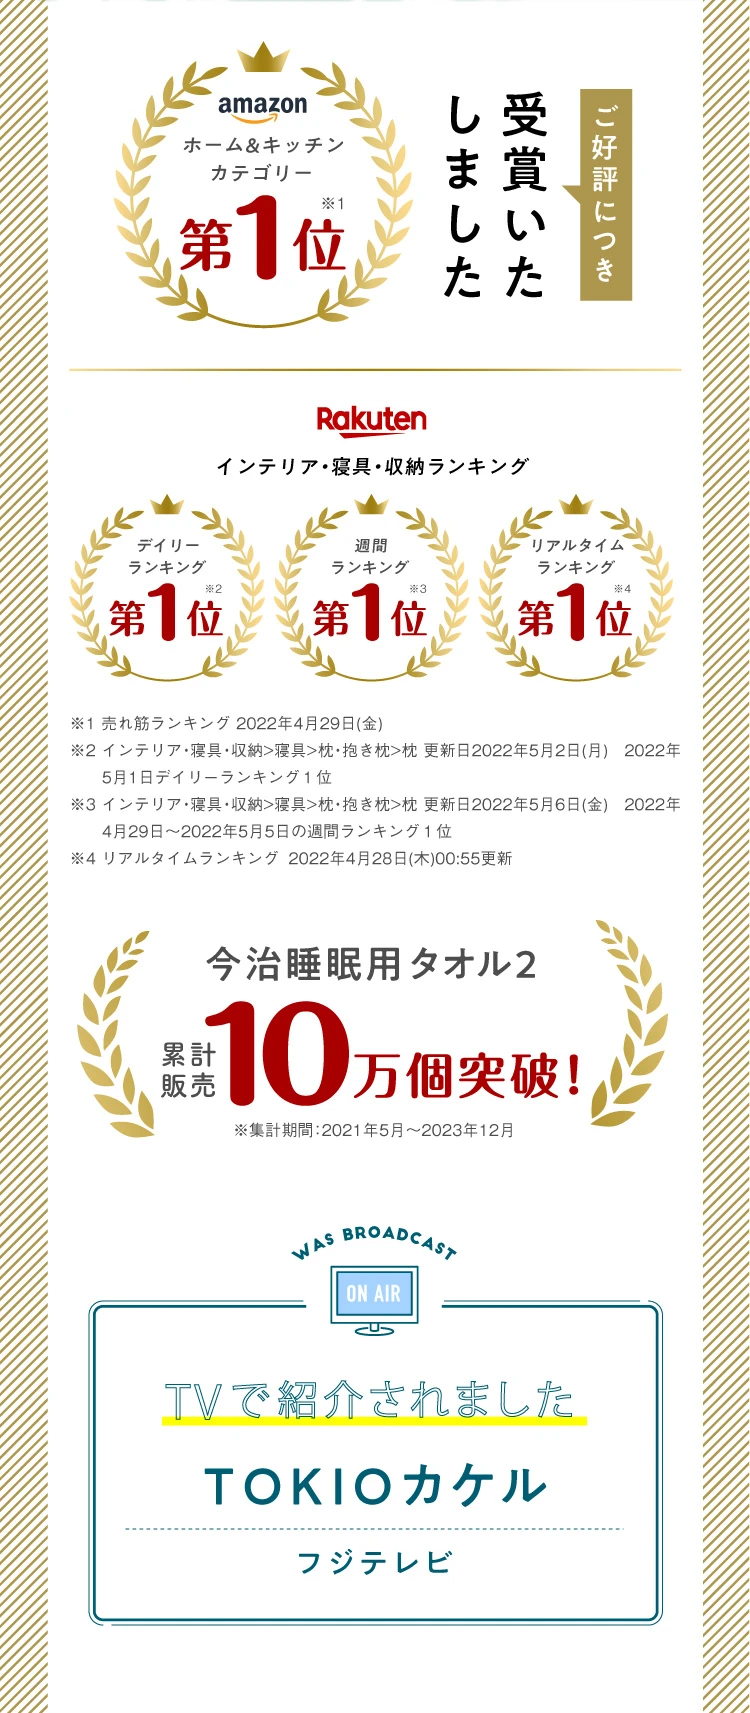 amazon、Rakutenで数々のランキングを受賞しました！累計販売10万個突吸！TVで紹介されました TOKIOカケル　フジテレビ